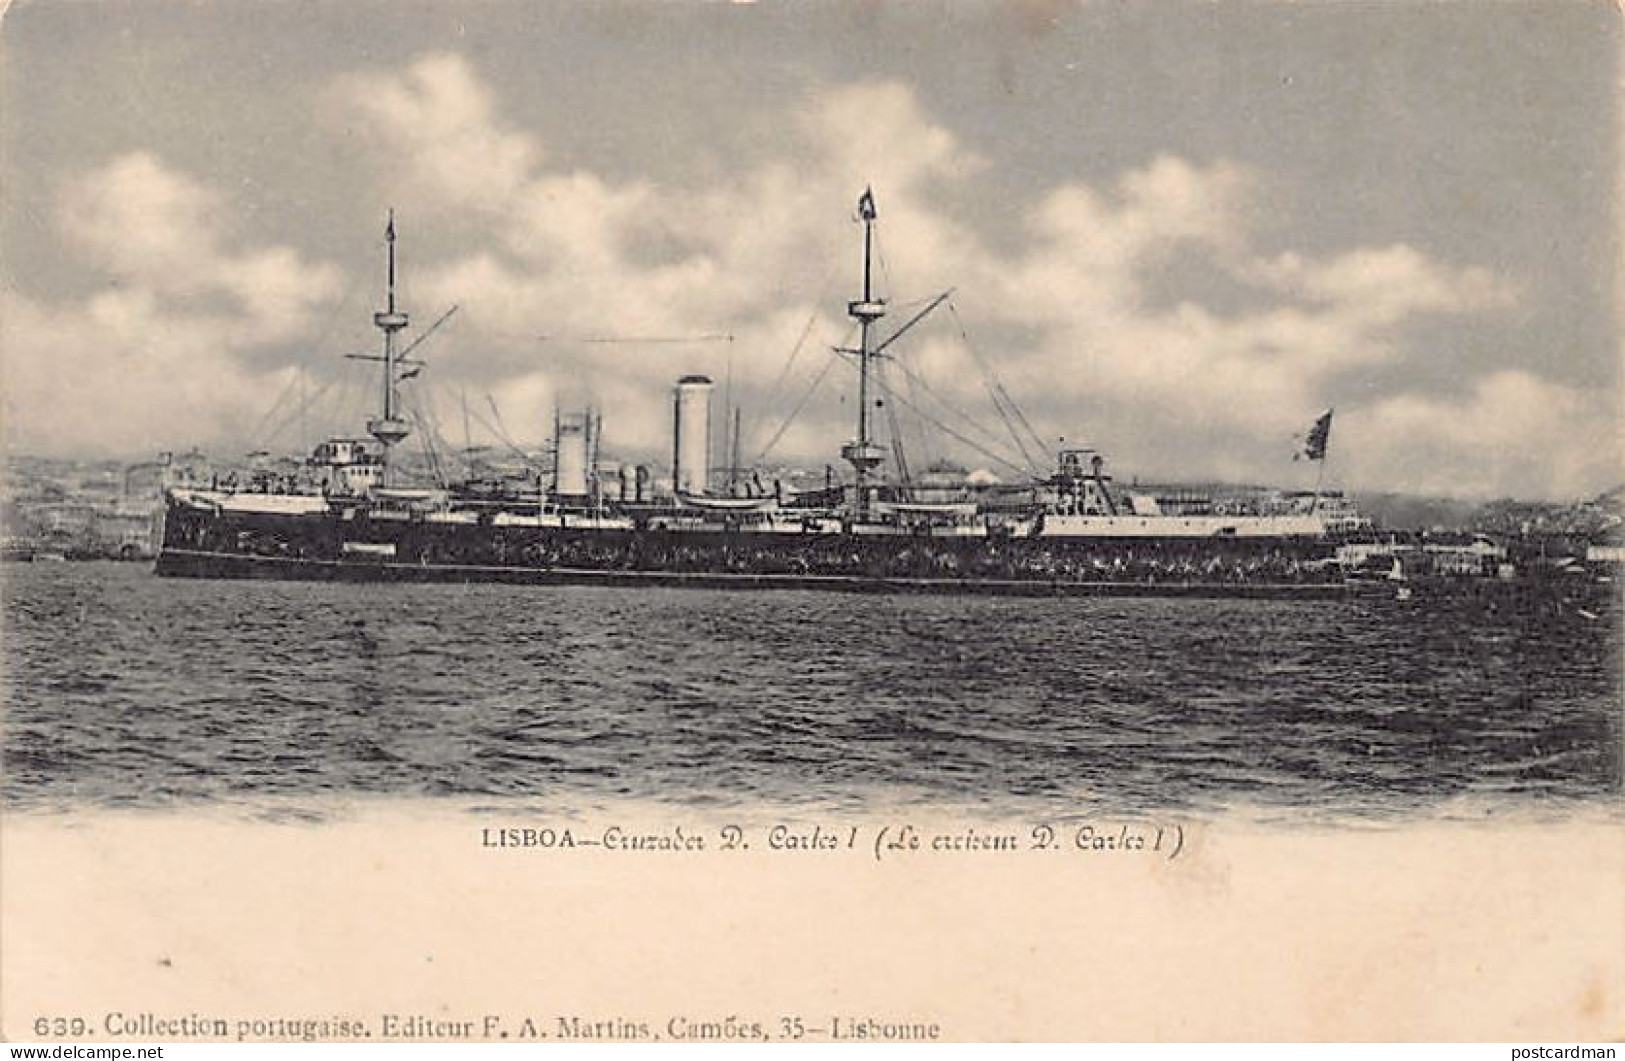 Portugal - LISBOA - Cruzador D. Carlos I - Ed. F. A. Martins 639 - Lisboa